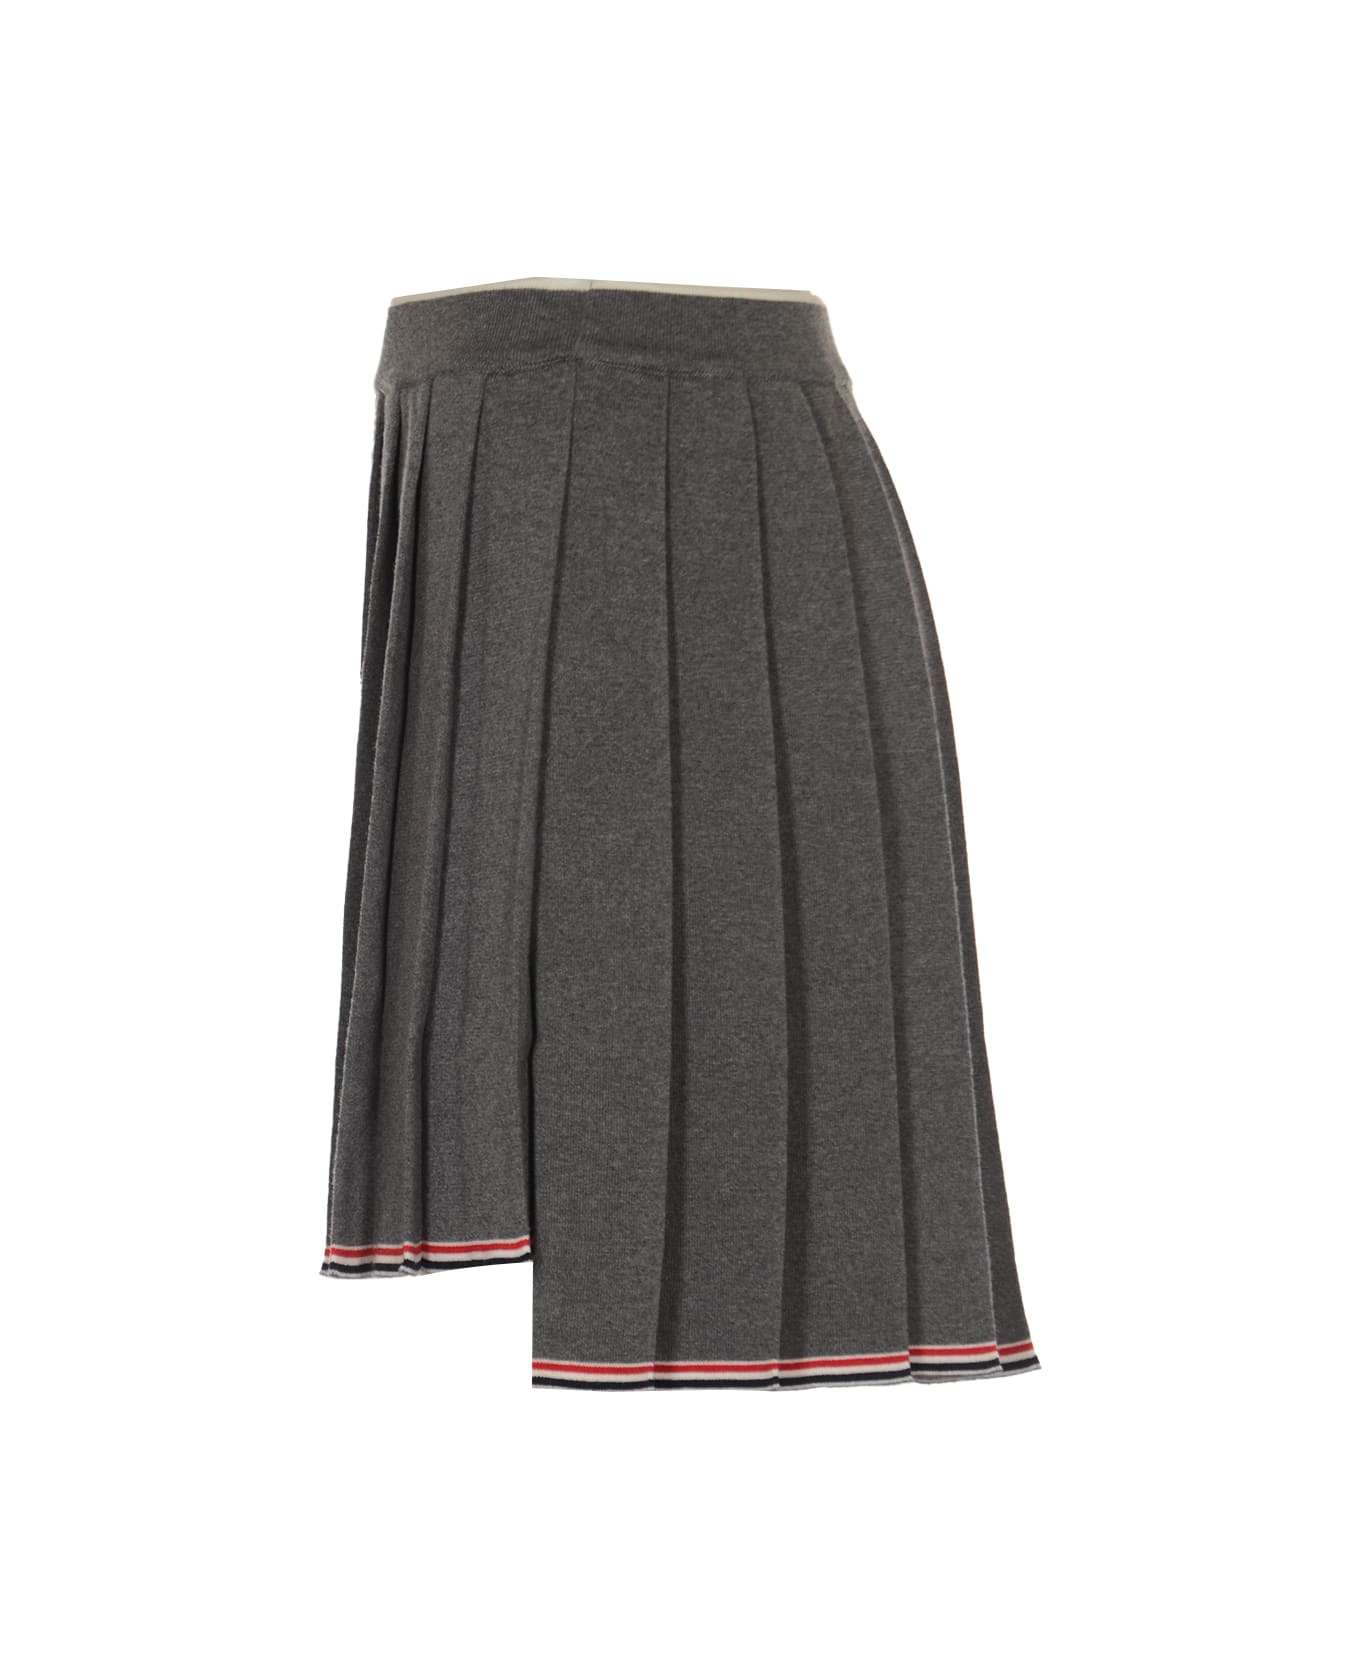 Thom Browne Pleated Mini Skirt - Medium Grey